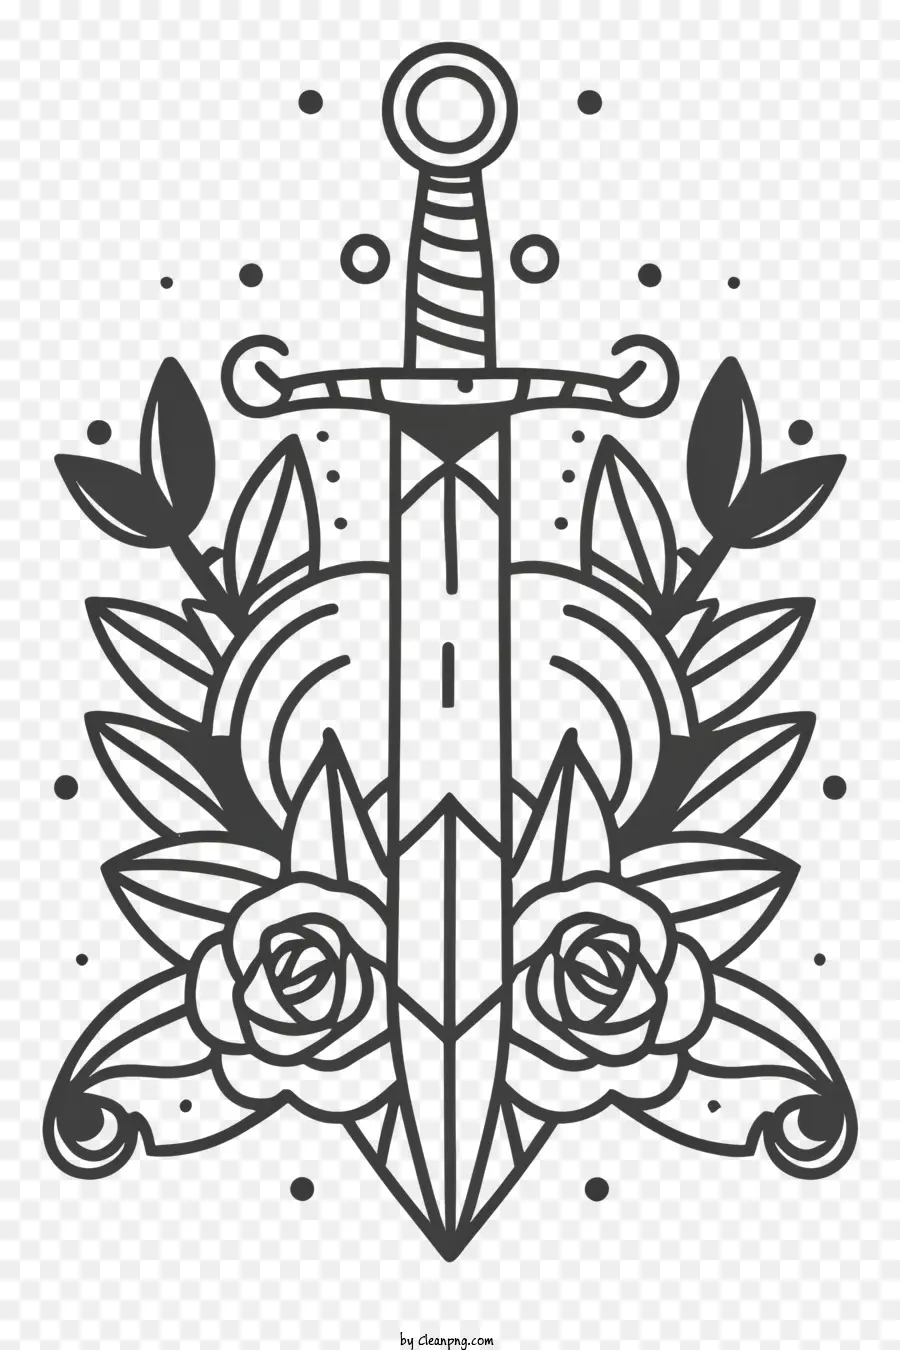 Schwert Tattoo Design Schwarz -Weiß -Tattoo Symbol des Kraftsymbols für Schutzkrieger und Ritter - Schwarz -Weiß -Tattoo von Schwert und Rosen